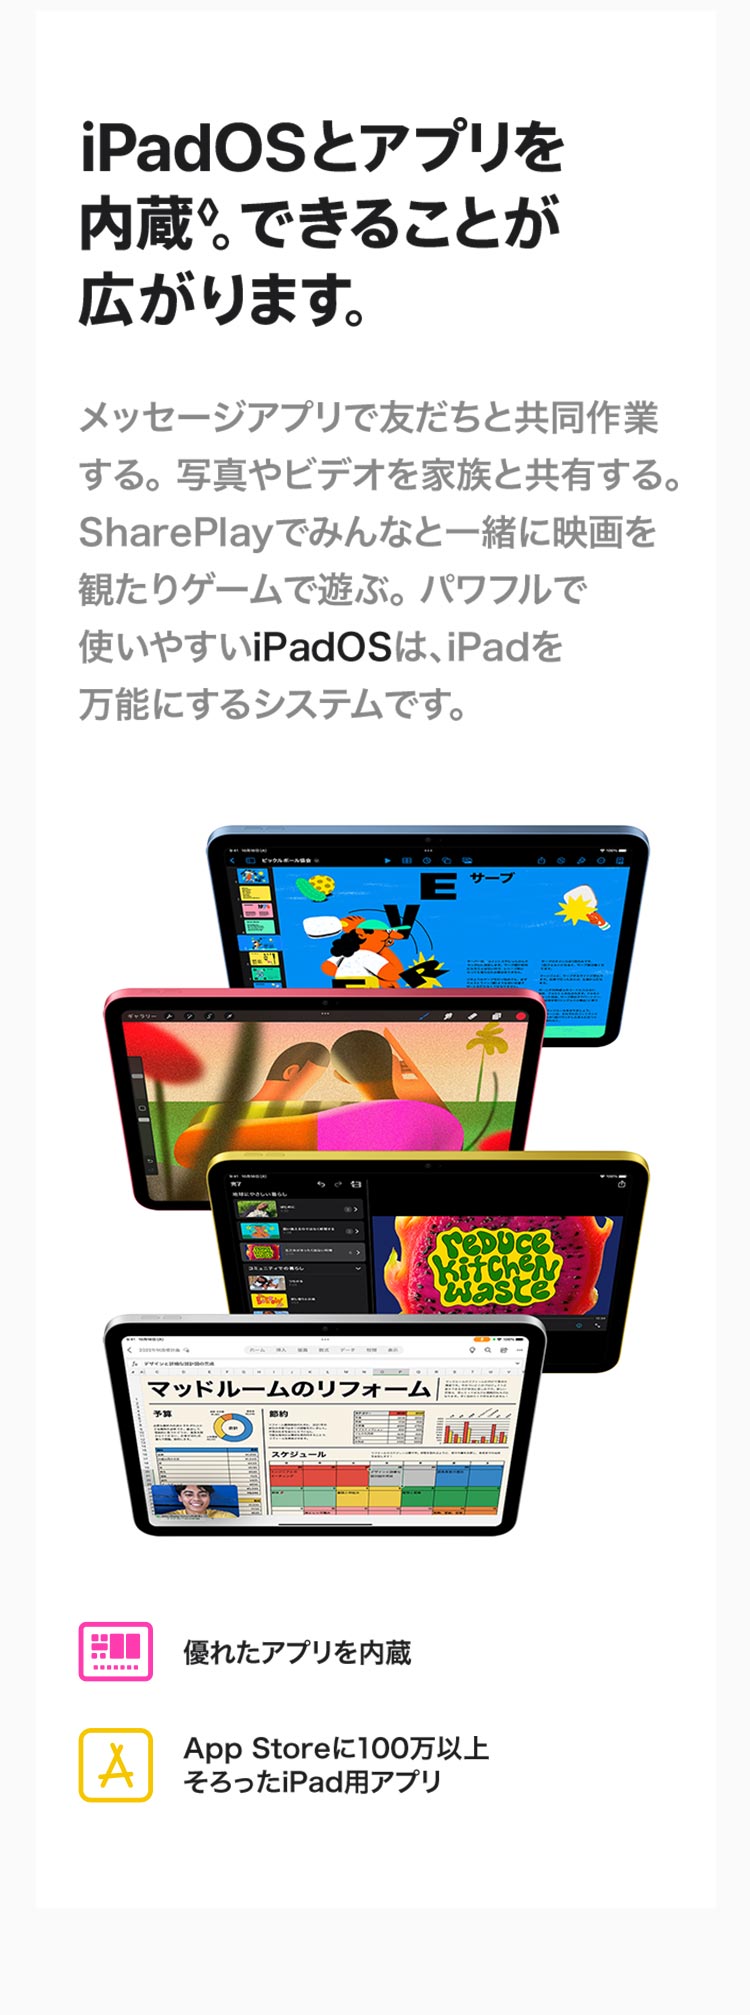 iPadOSとアプリを内蔵。できることが広がります。メッセージアプリで友達と共同作業する。写真やビデオを家族と共有する。SharePlayでみんなと一緒に映画を観たりゲームで遊ぶ。パワフルで使いやすいiPadOSは、iPadを万能にするシステムです。